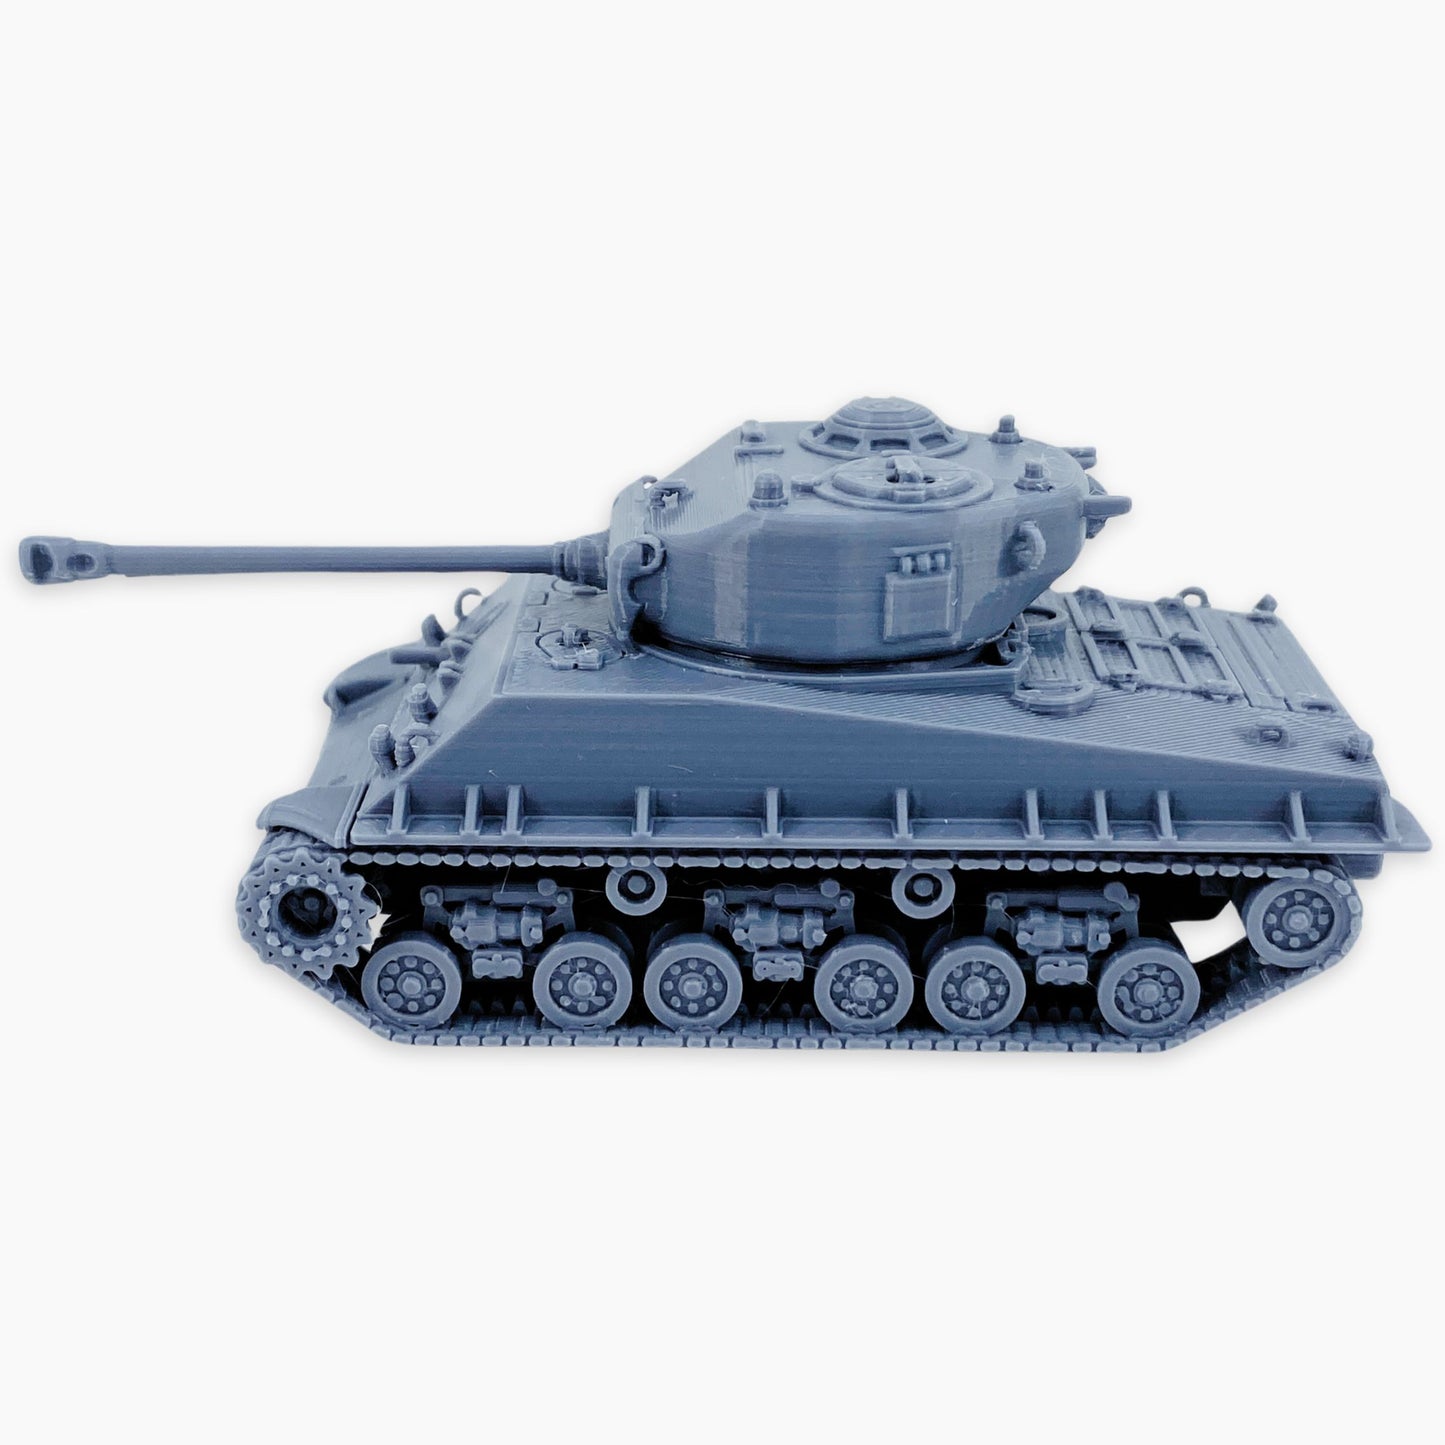 Sherman M4A3E8